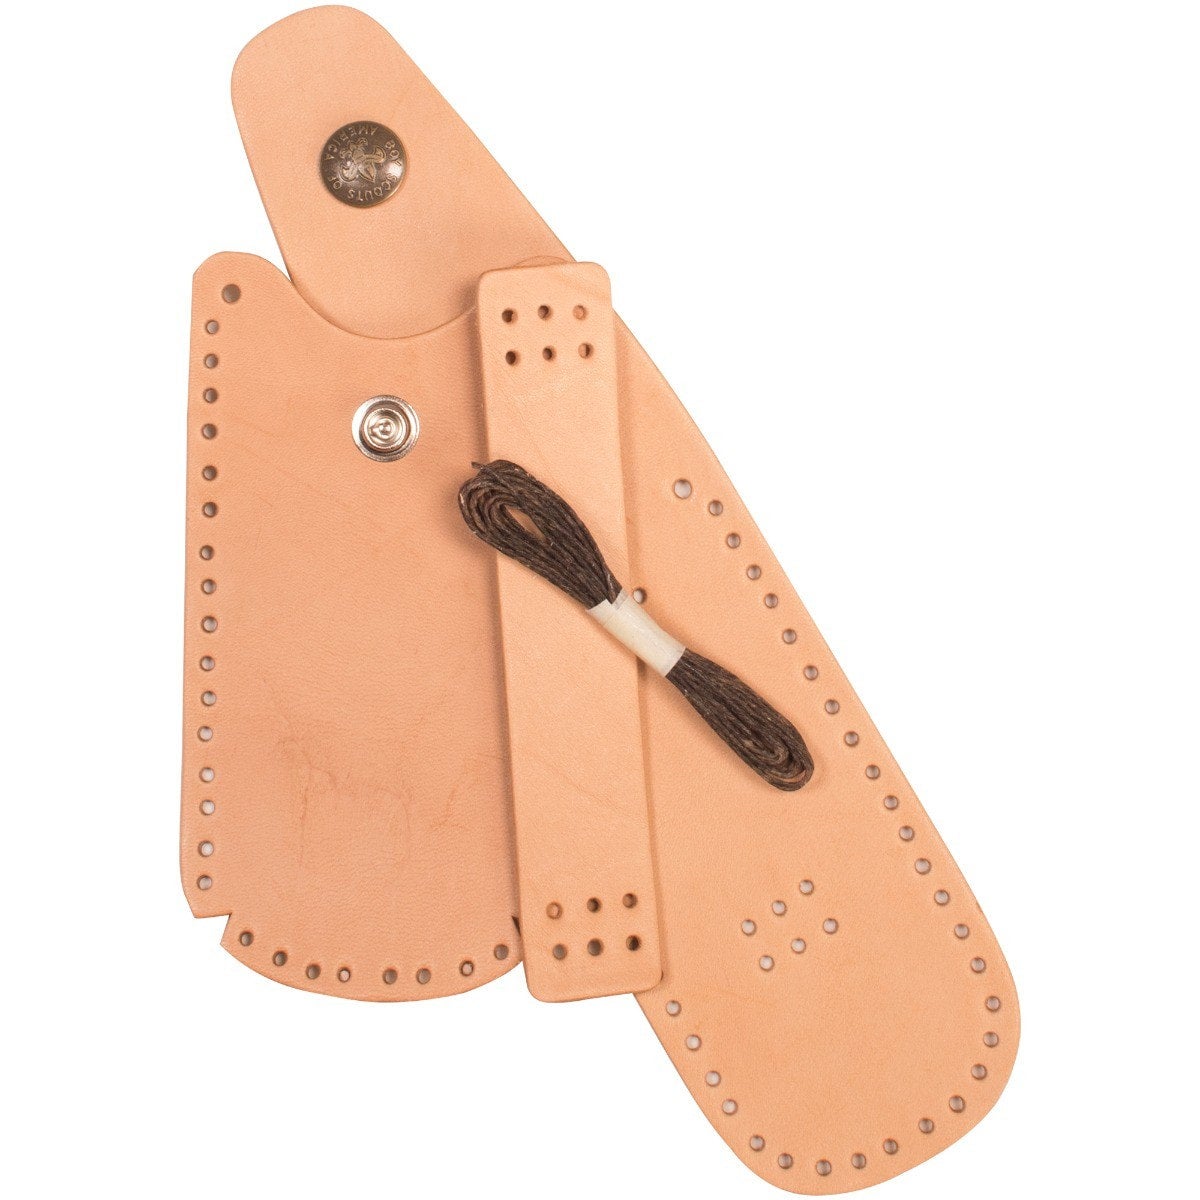 BSA Leather Wallet Kit